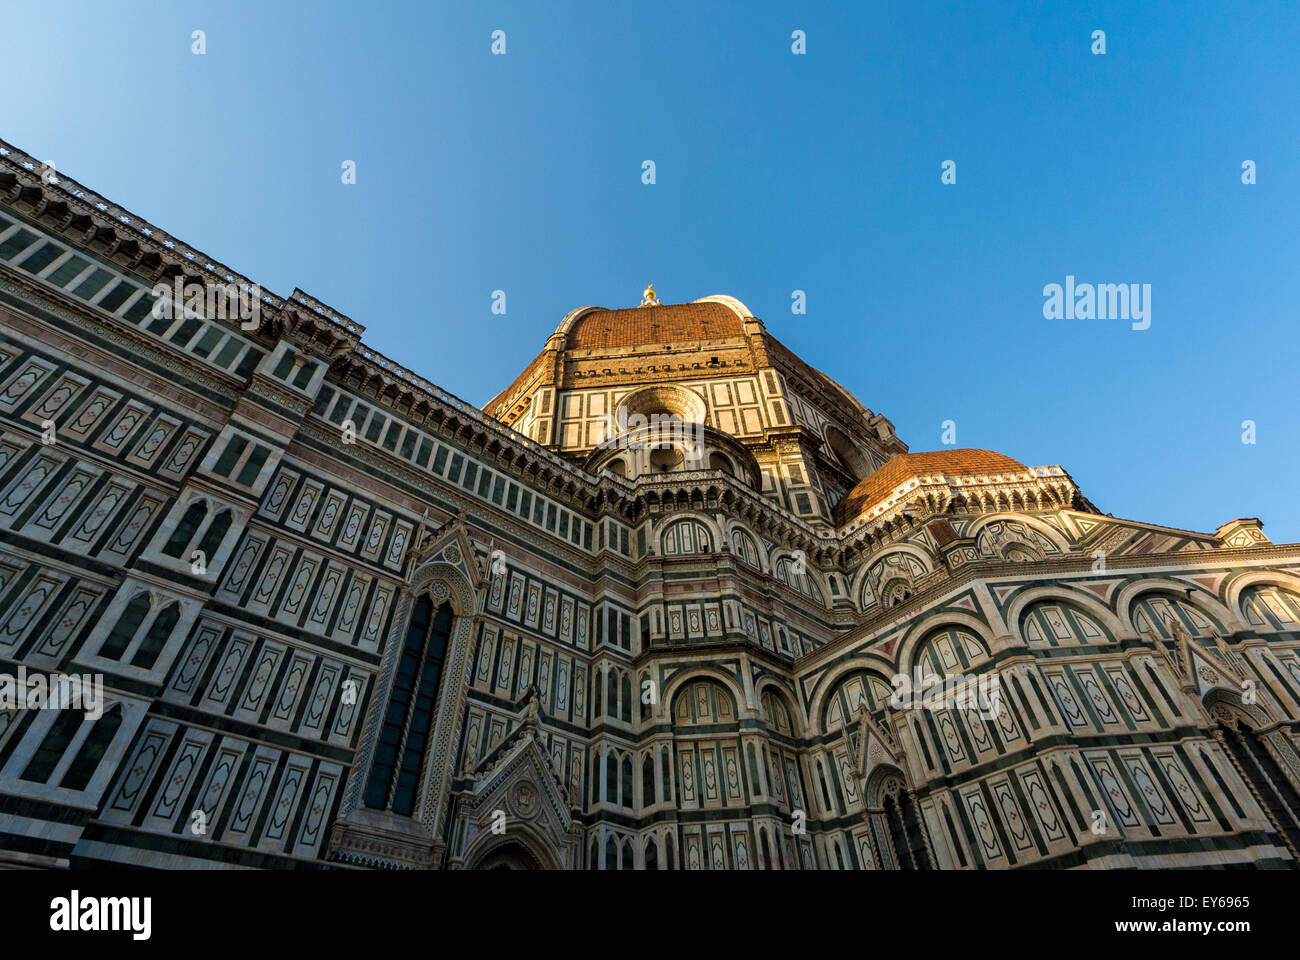 Die Südfassade façade der Kathedrale von Florenz wurde von der Piazza del Duomo aus aufgenommen und blickte nach oben in Richtung der Kuppel. Florenz, Italien. Stockfoto